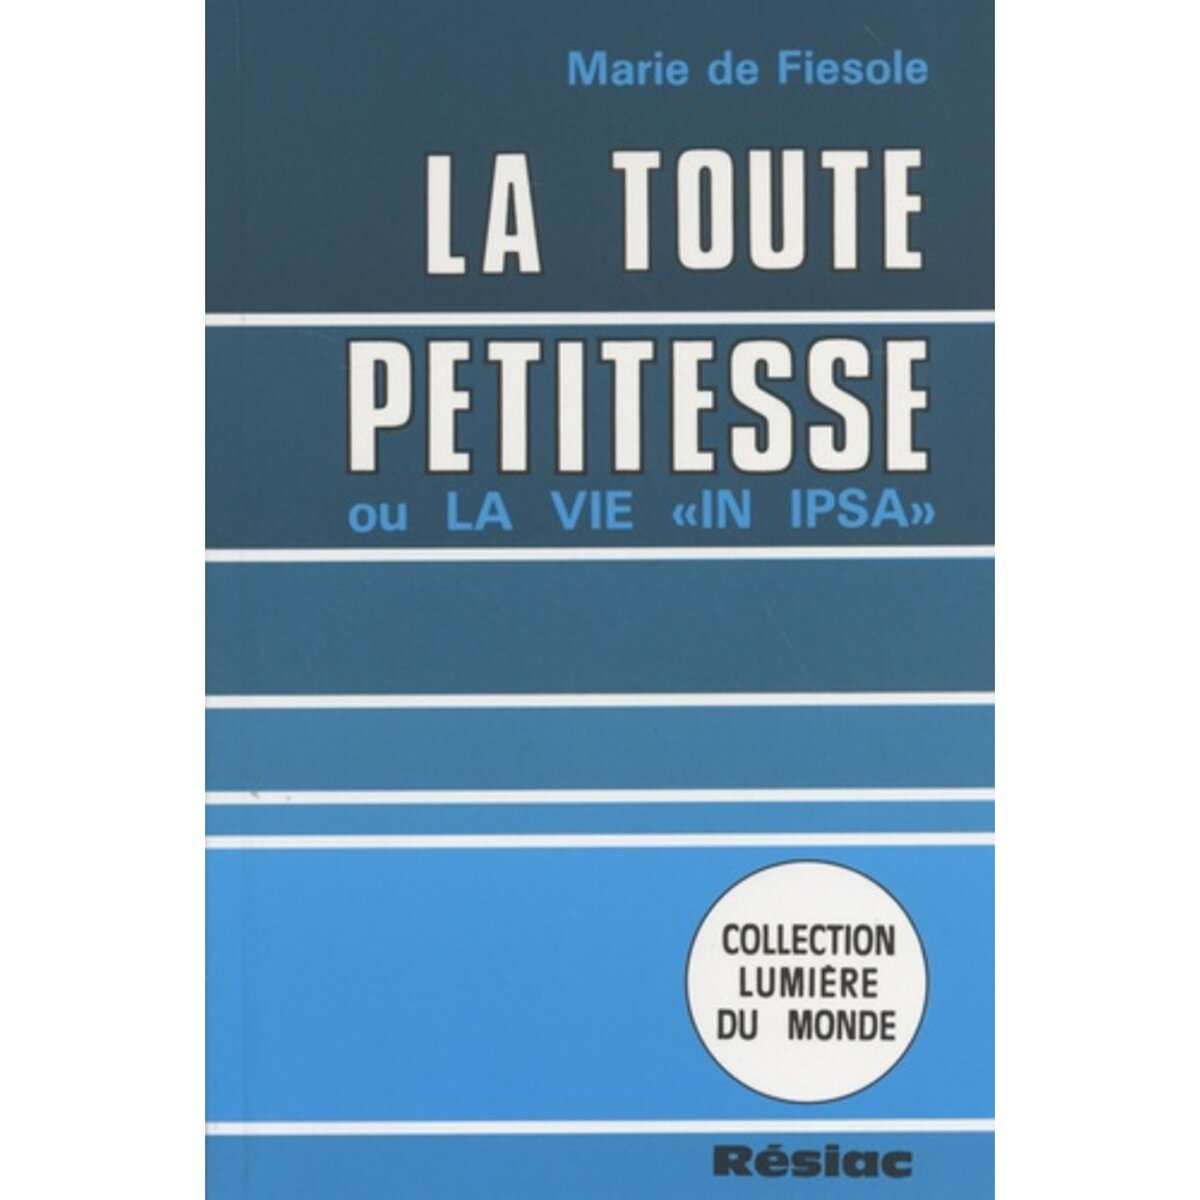  LA TOUTE PETITESSE, Marie de Fiesole